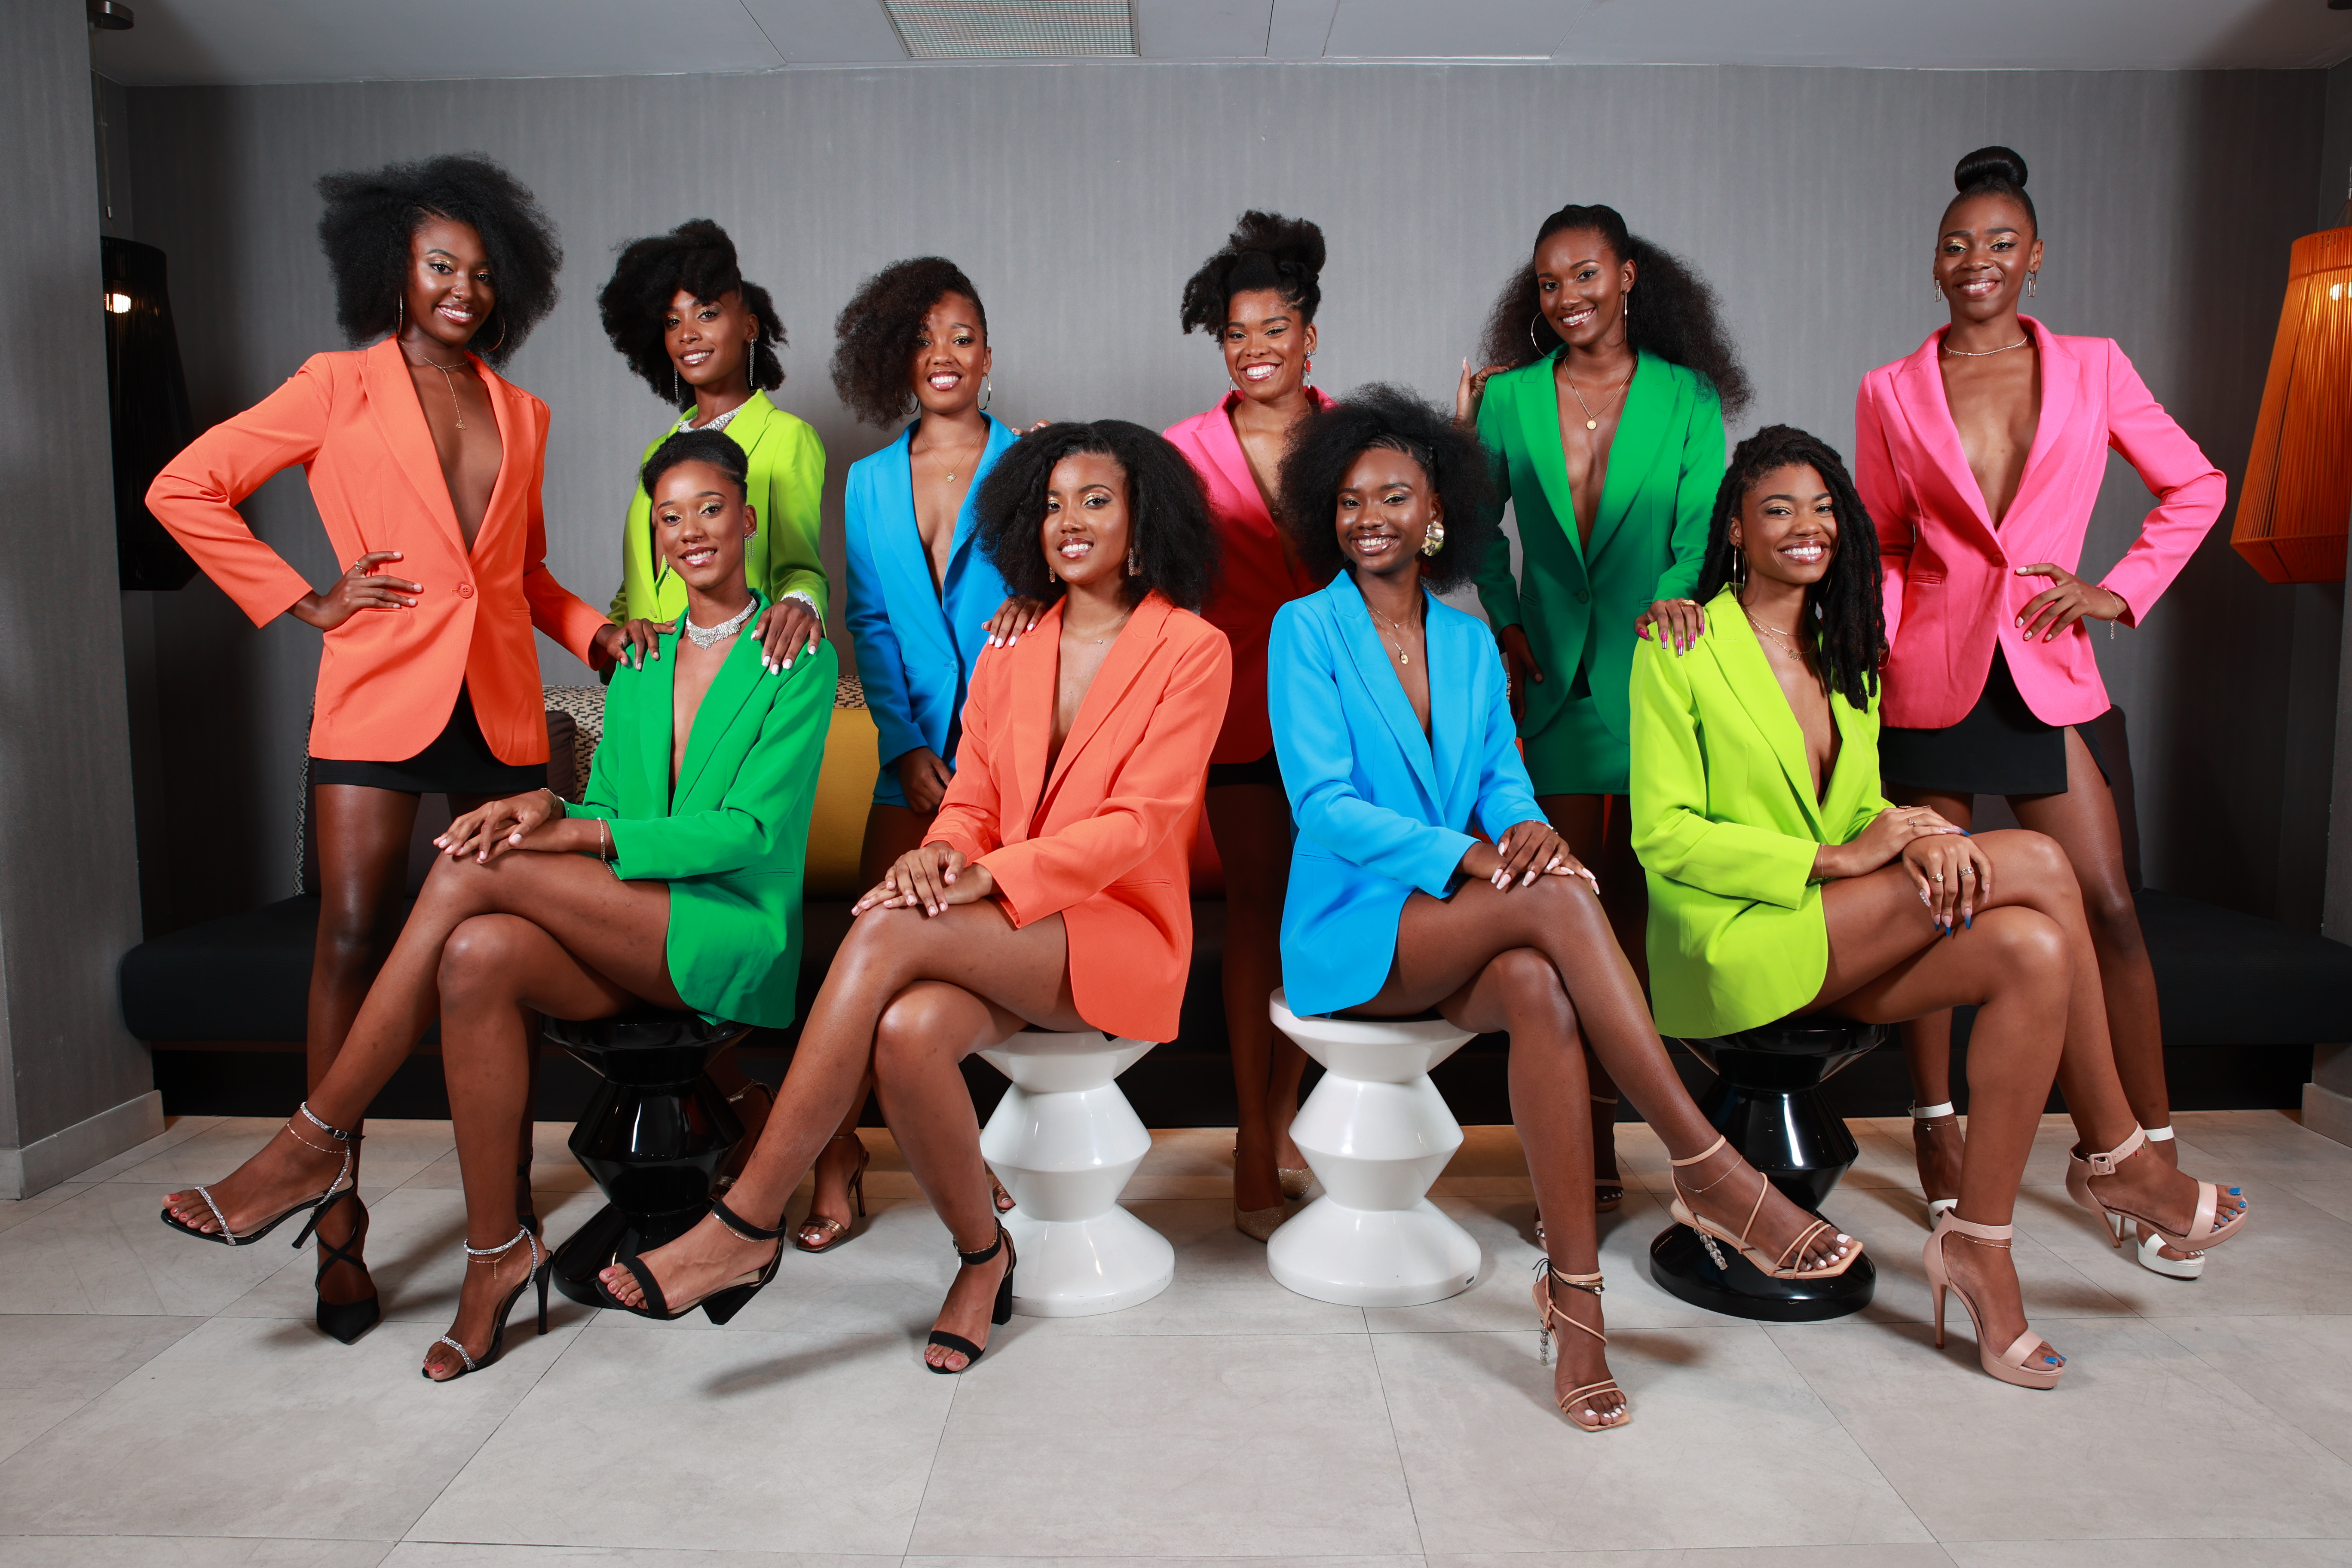     Miss Beauté Noire : découvrez les 10 candidates

